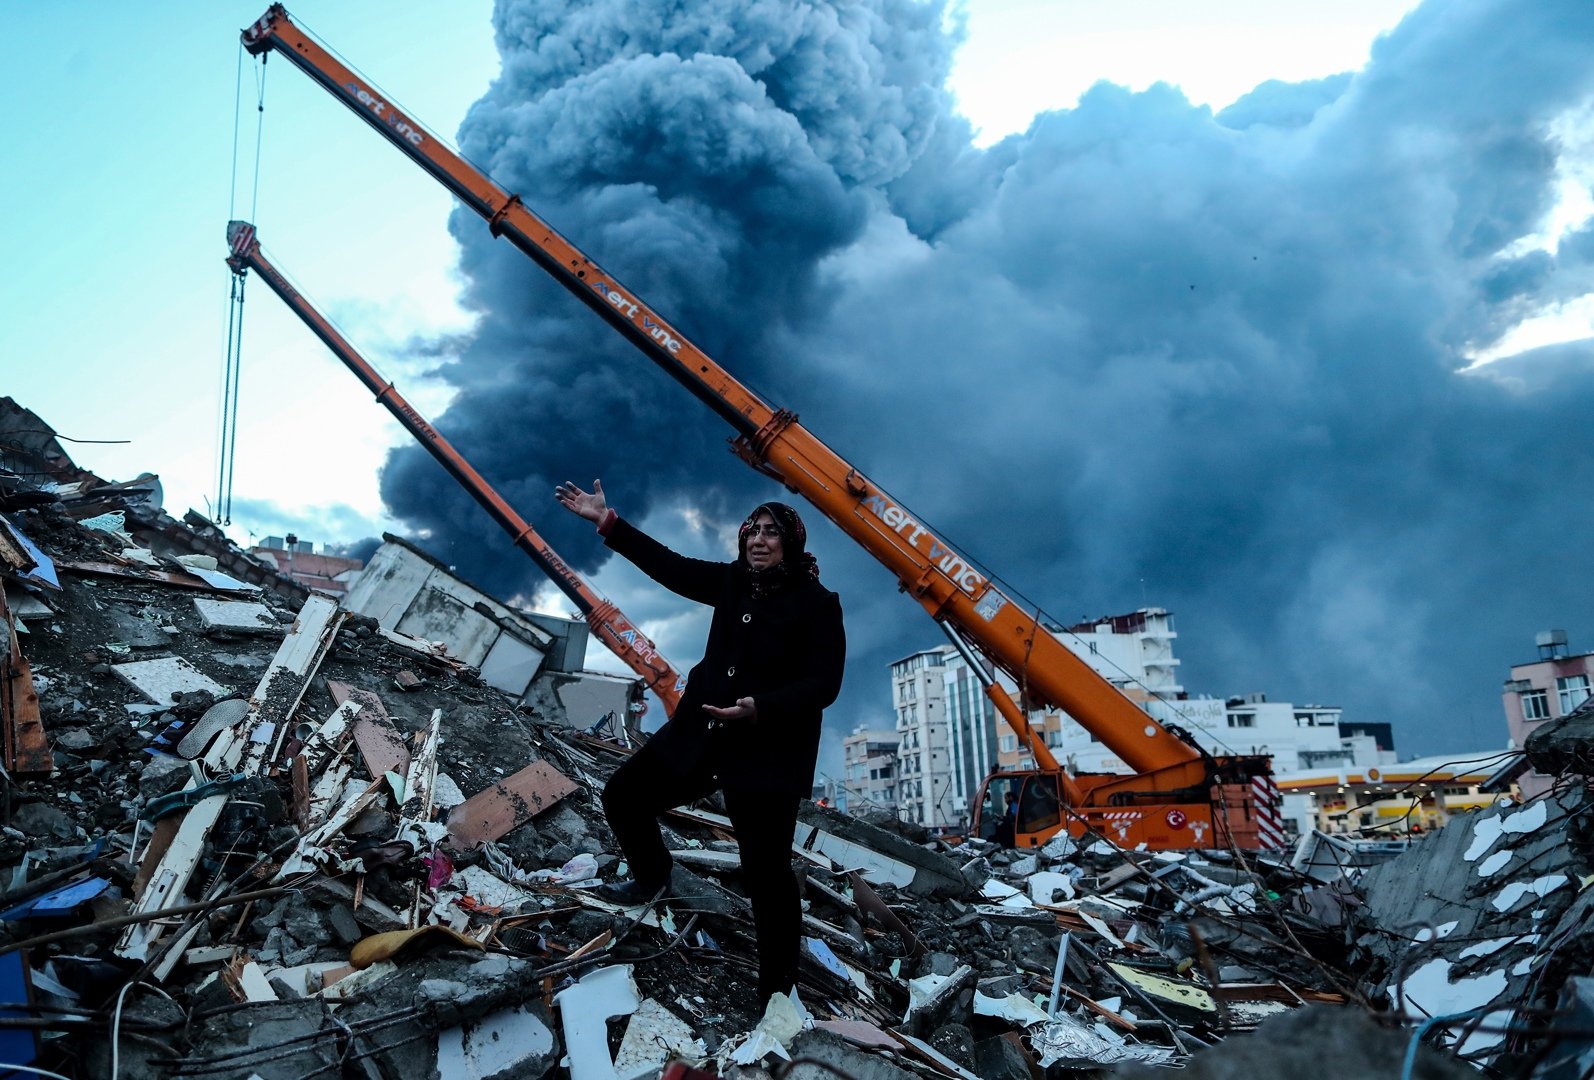 K9 de Creixell, al rescat de les víctimes del terratrèmol a Turquia: "No tenim gaire temps"